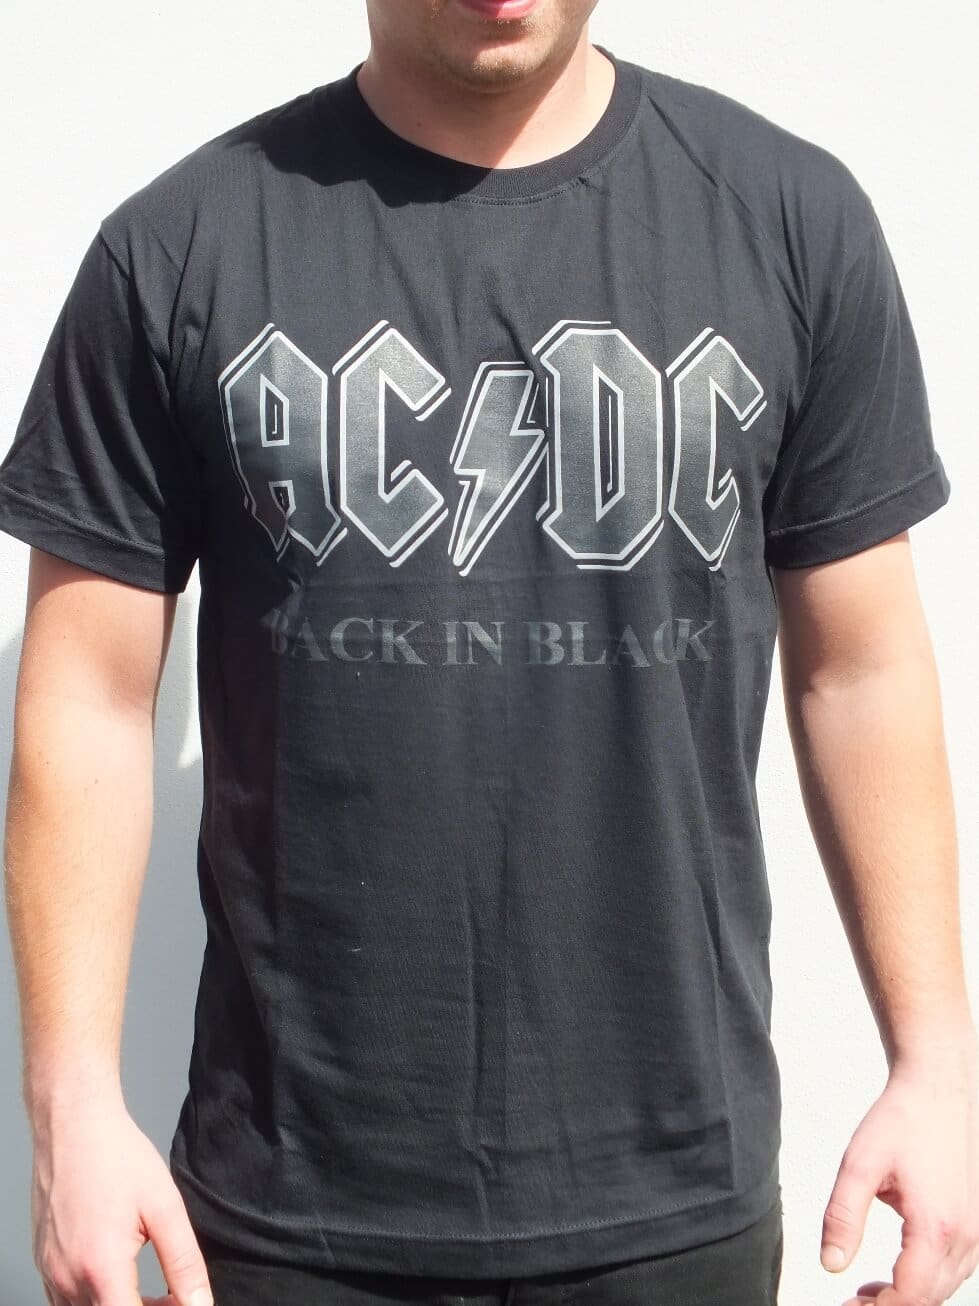 Black Ac Dc Shirt | vlr.eng.br